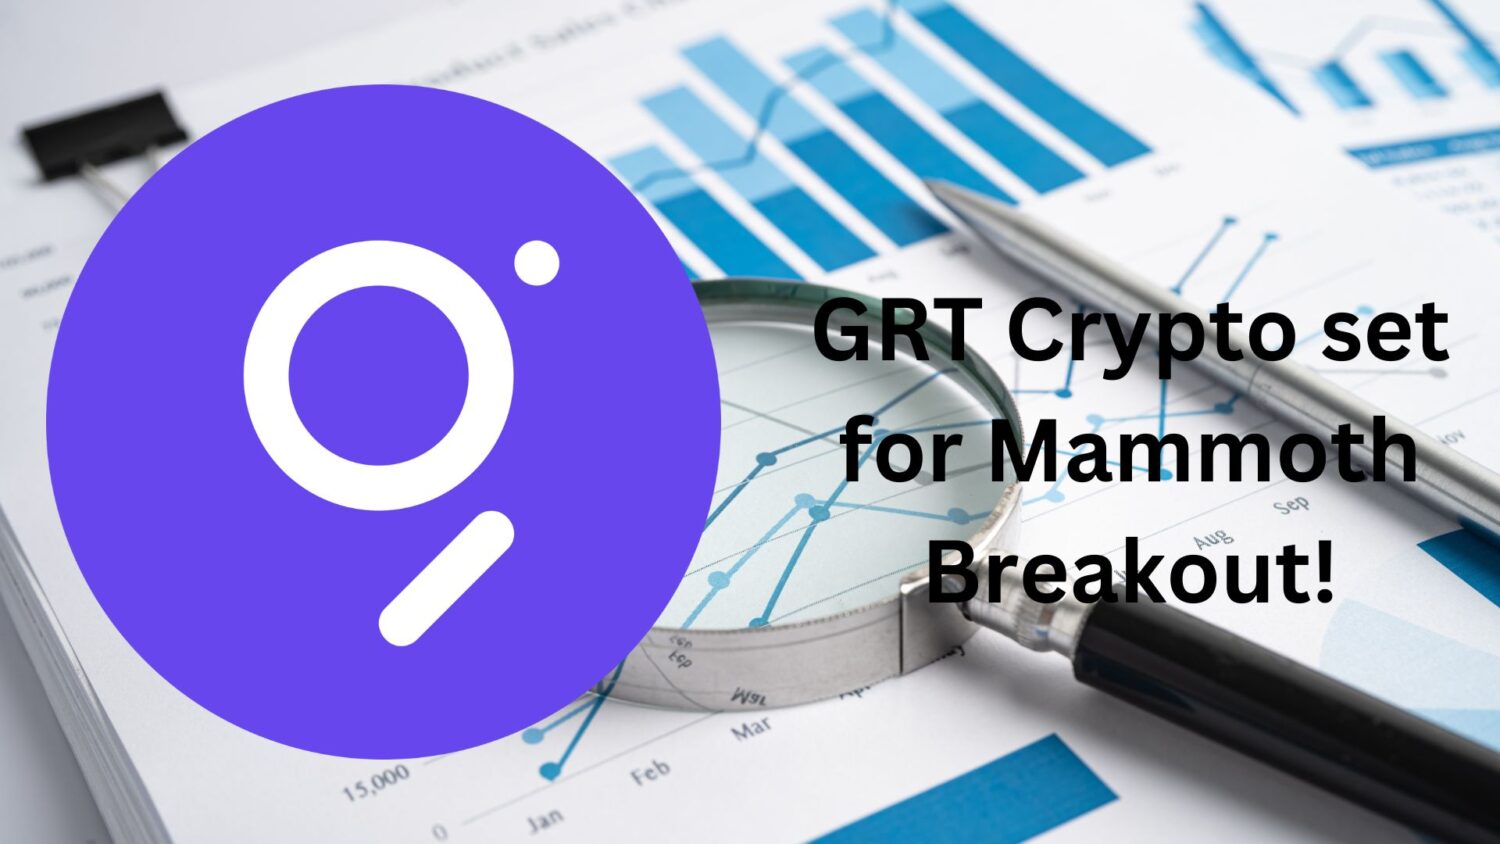 Grt Crypto Price Analysis